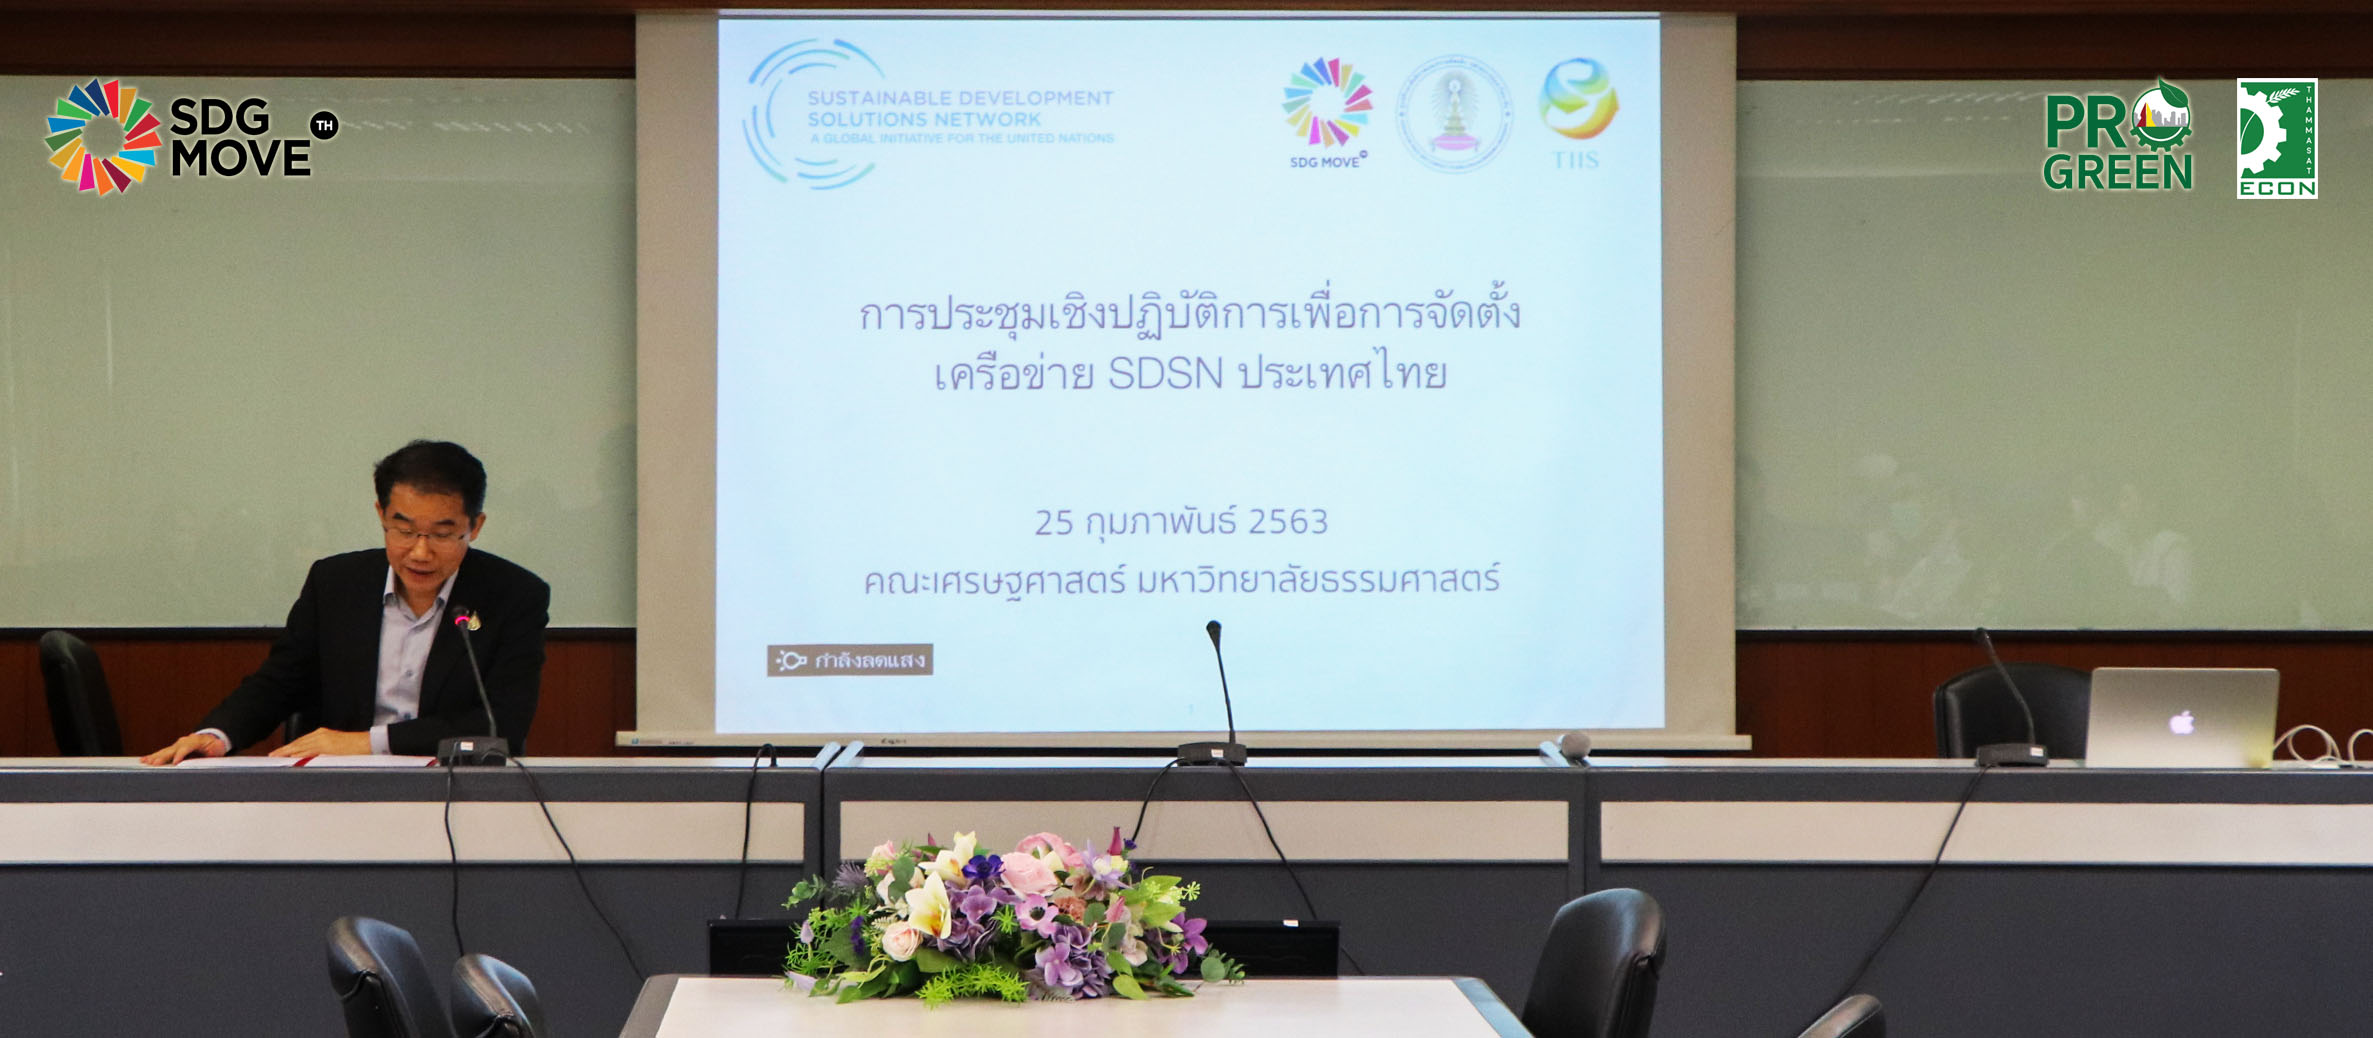 SDG Updates | ระดมความเห็นจัดตั้ง “SDSN Thailand” เครือข่ายวิชาการที่จะทำให้ไทยบรรลุความยั่งยืนในระดับโลก